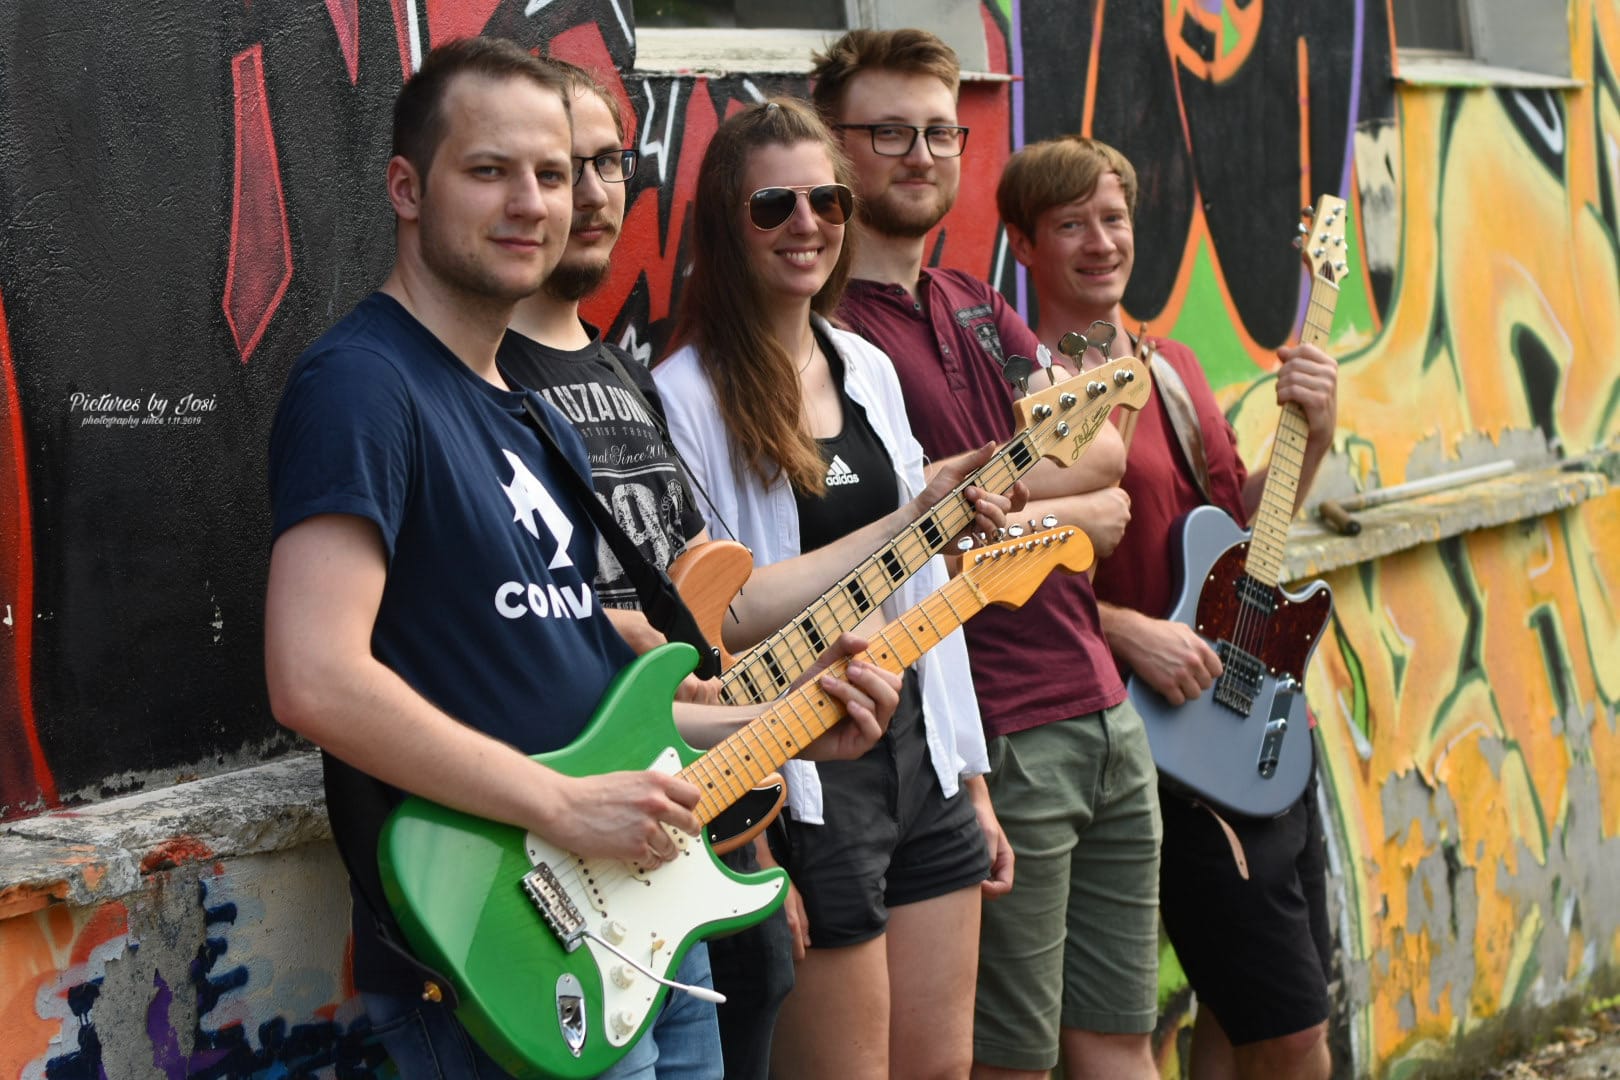 Zu sehen ist die Band Air Shot. Die fünf Bandmitglieder stehen vor einer mit Graffiti besprühten Wand. Drei der Personen halten E-Gitarren bzw. einen E-Bass in der Hand.